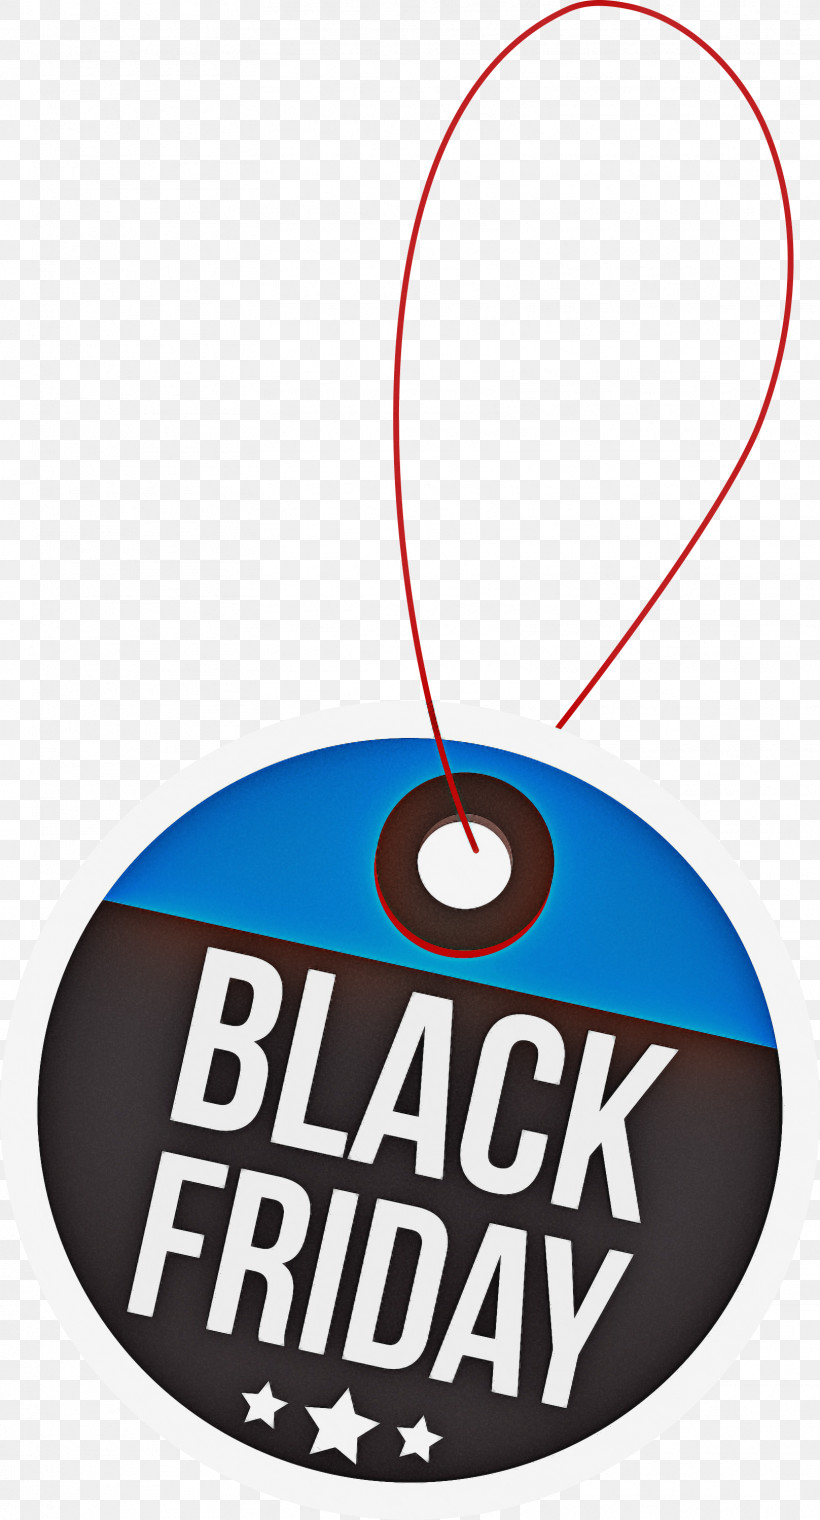 Black Friday Black Friday Discount Black Friday Sale, PNG, 1617x2999px, Black Friday, Black Friday Discount, Black Friday Sale, Labelm, Logo Download Free